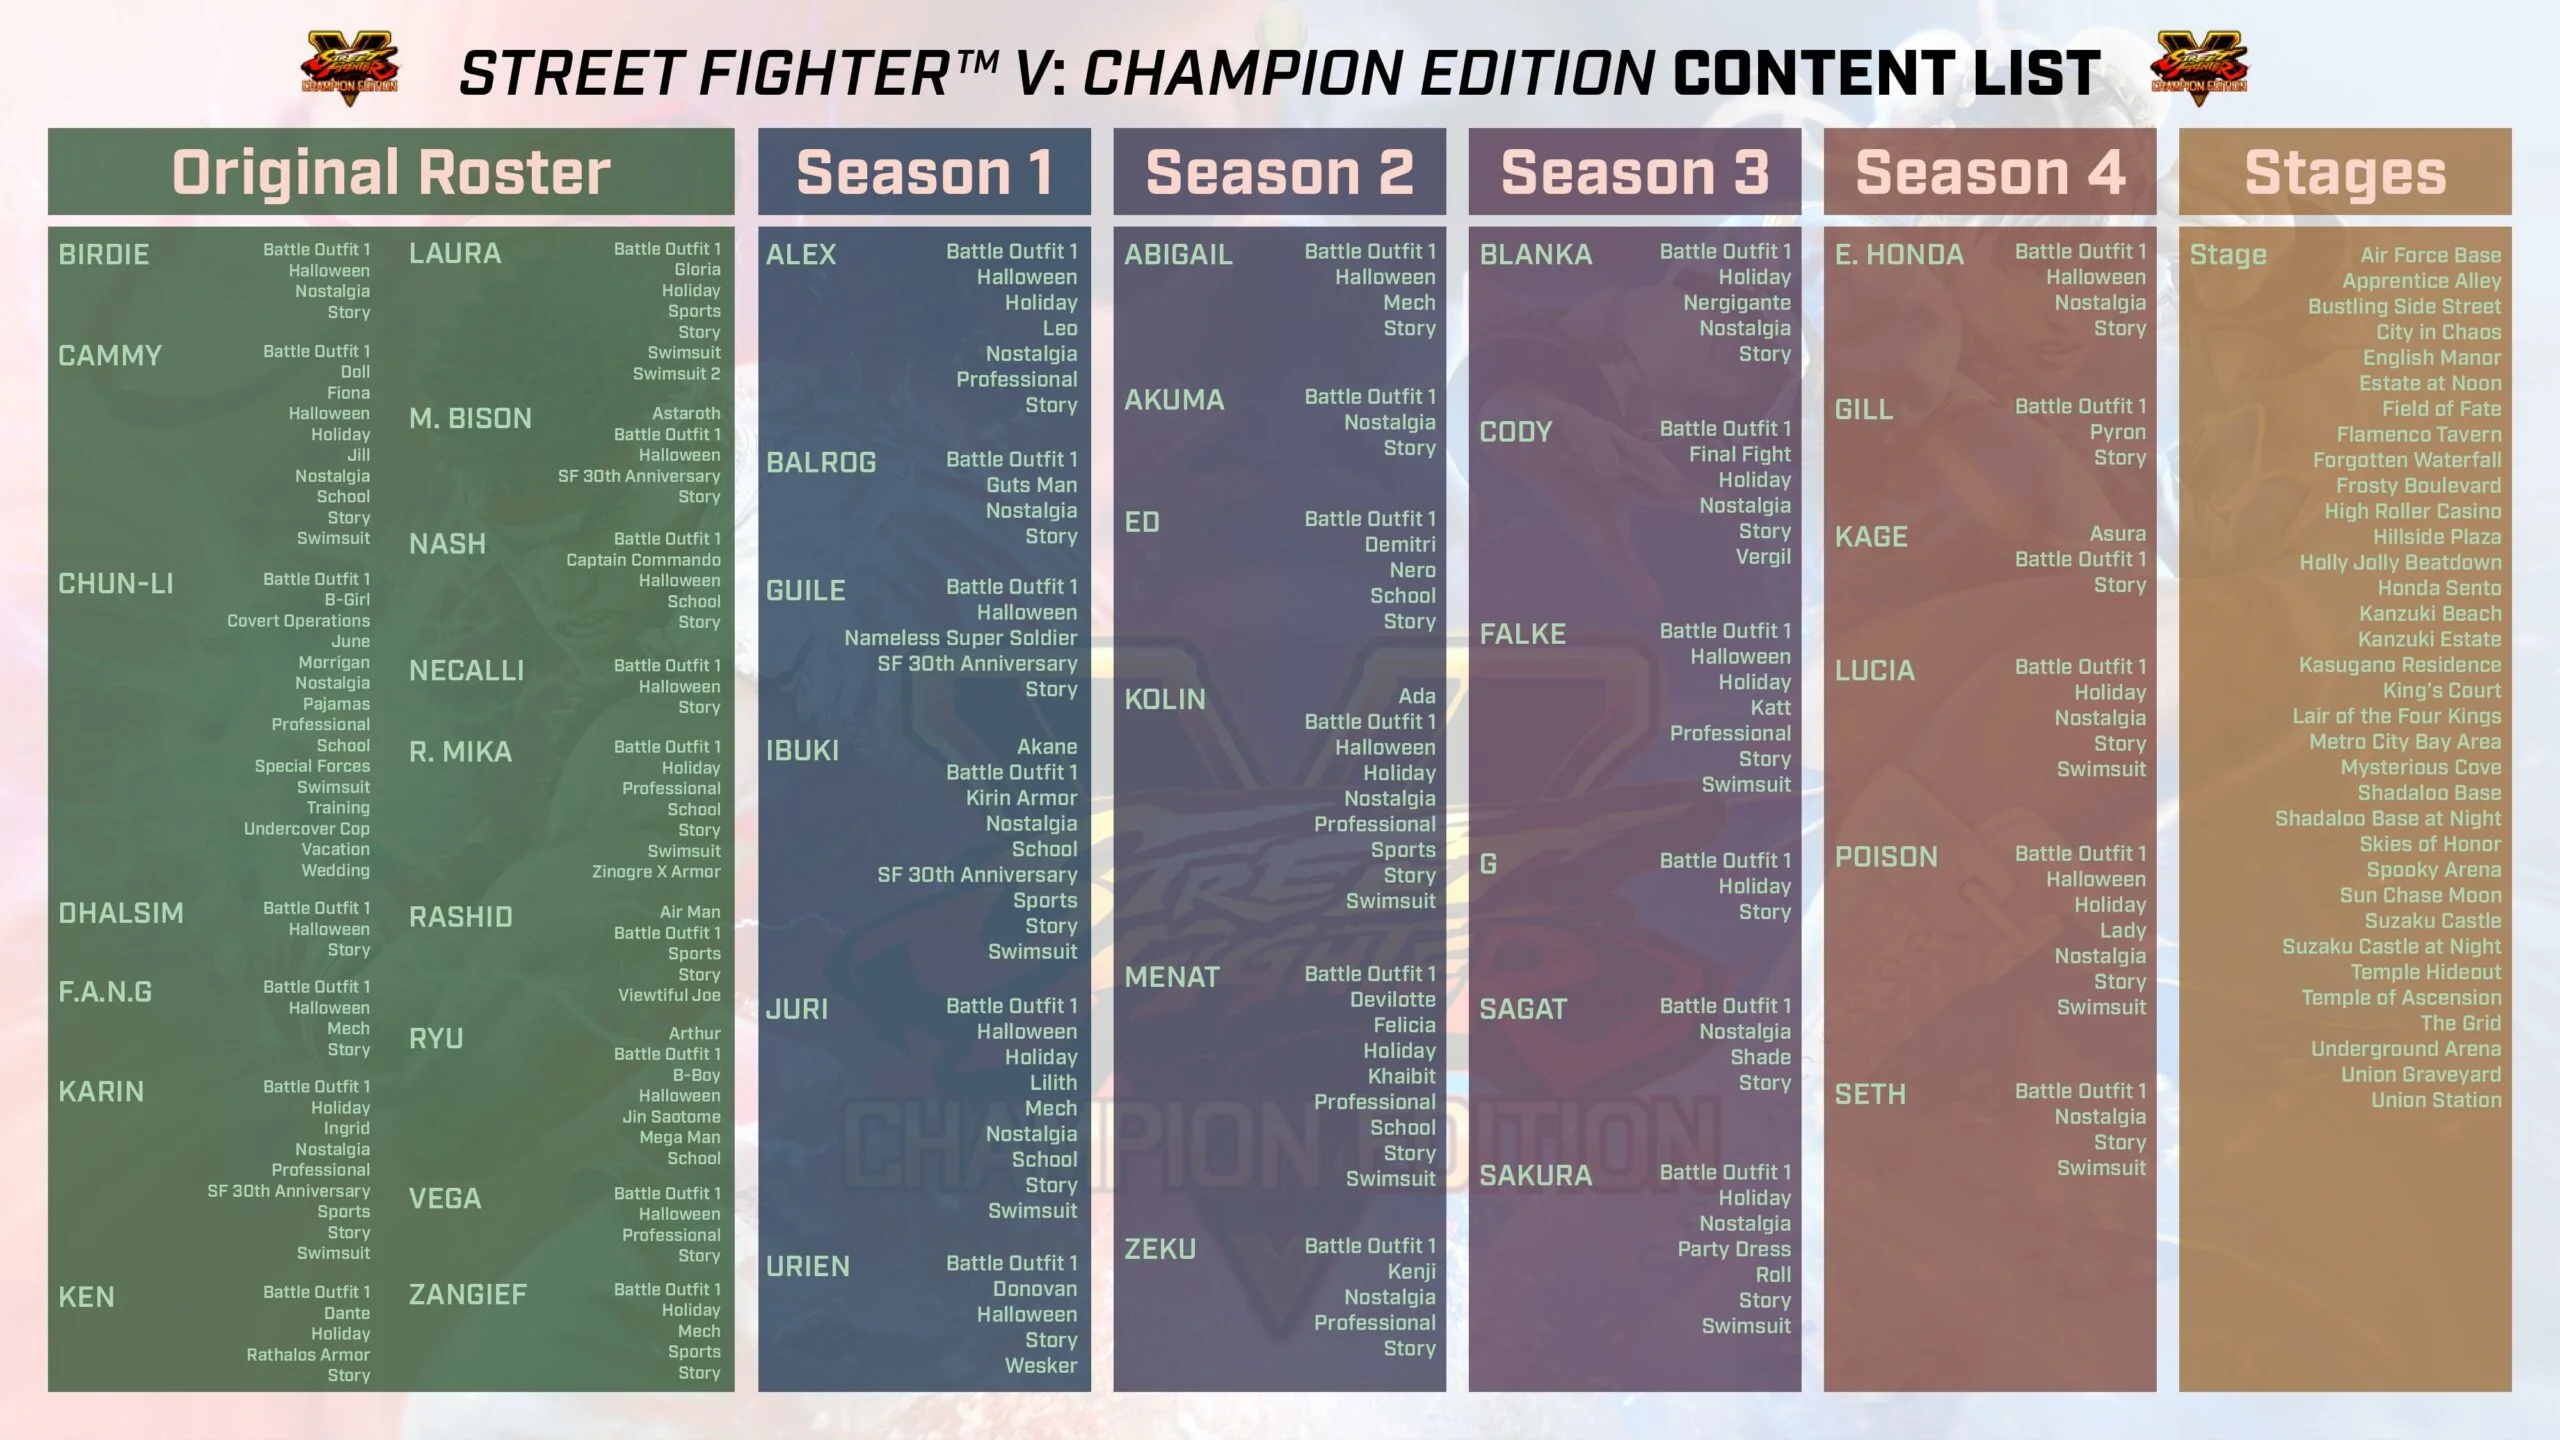 Появился трейлер к выходу Street Fighter V: Champion Edition - фото 1